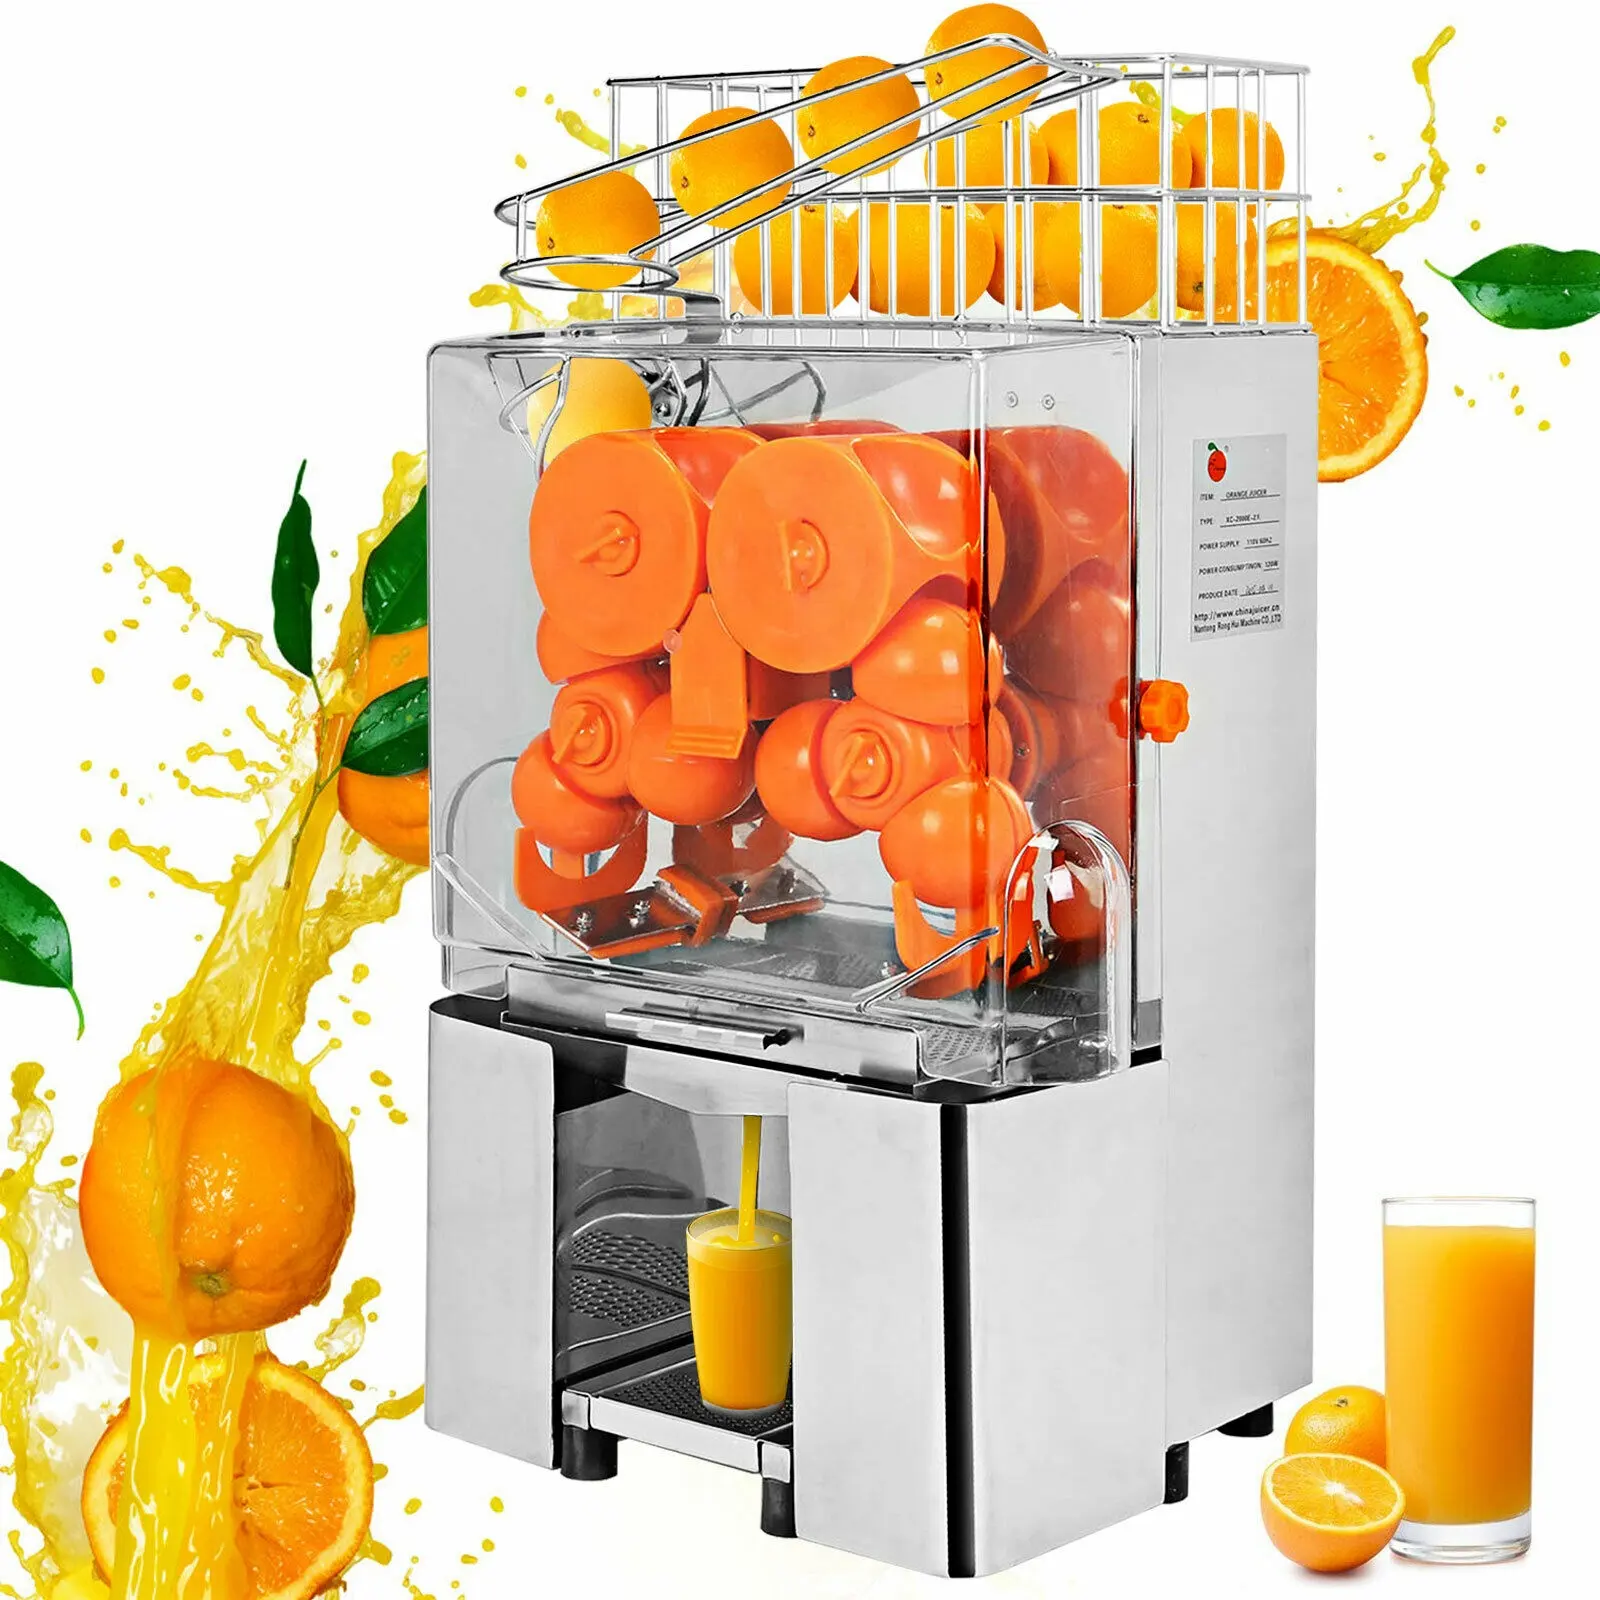 フルーツ抽出機、自動産業オレンジジューサーマシンスクイーザー22-25オレンジ/分